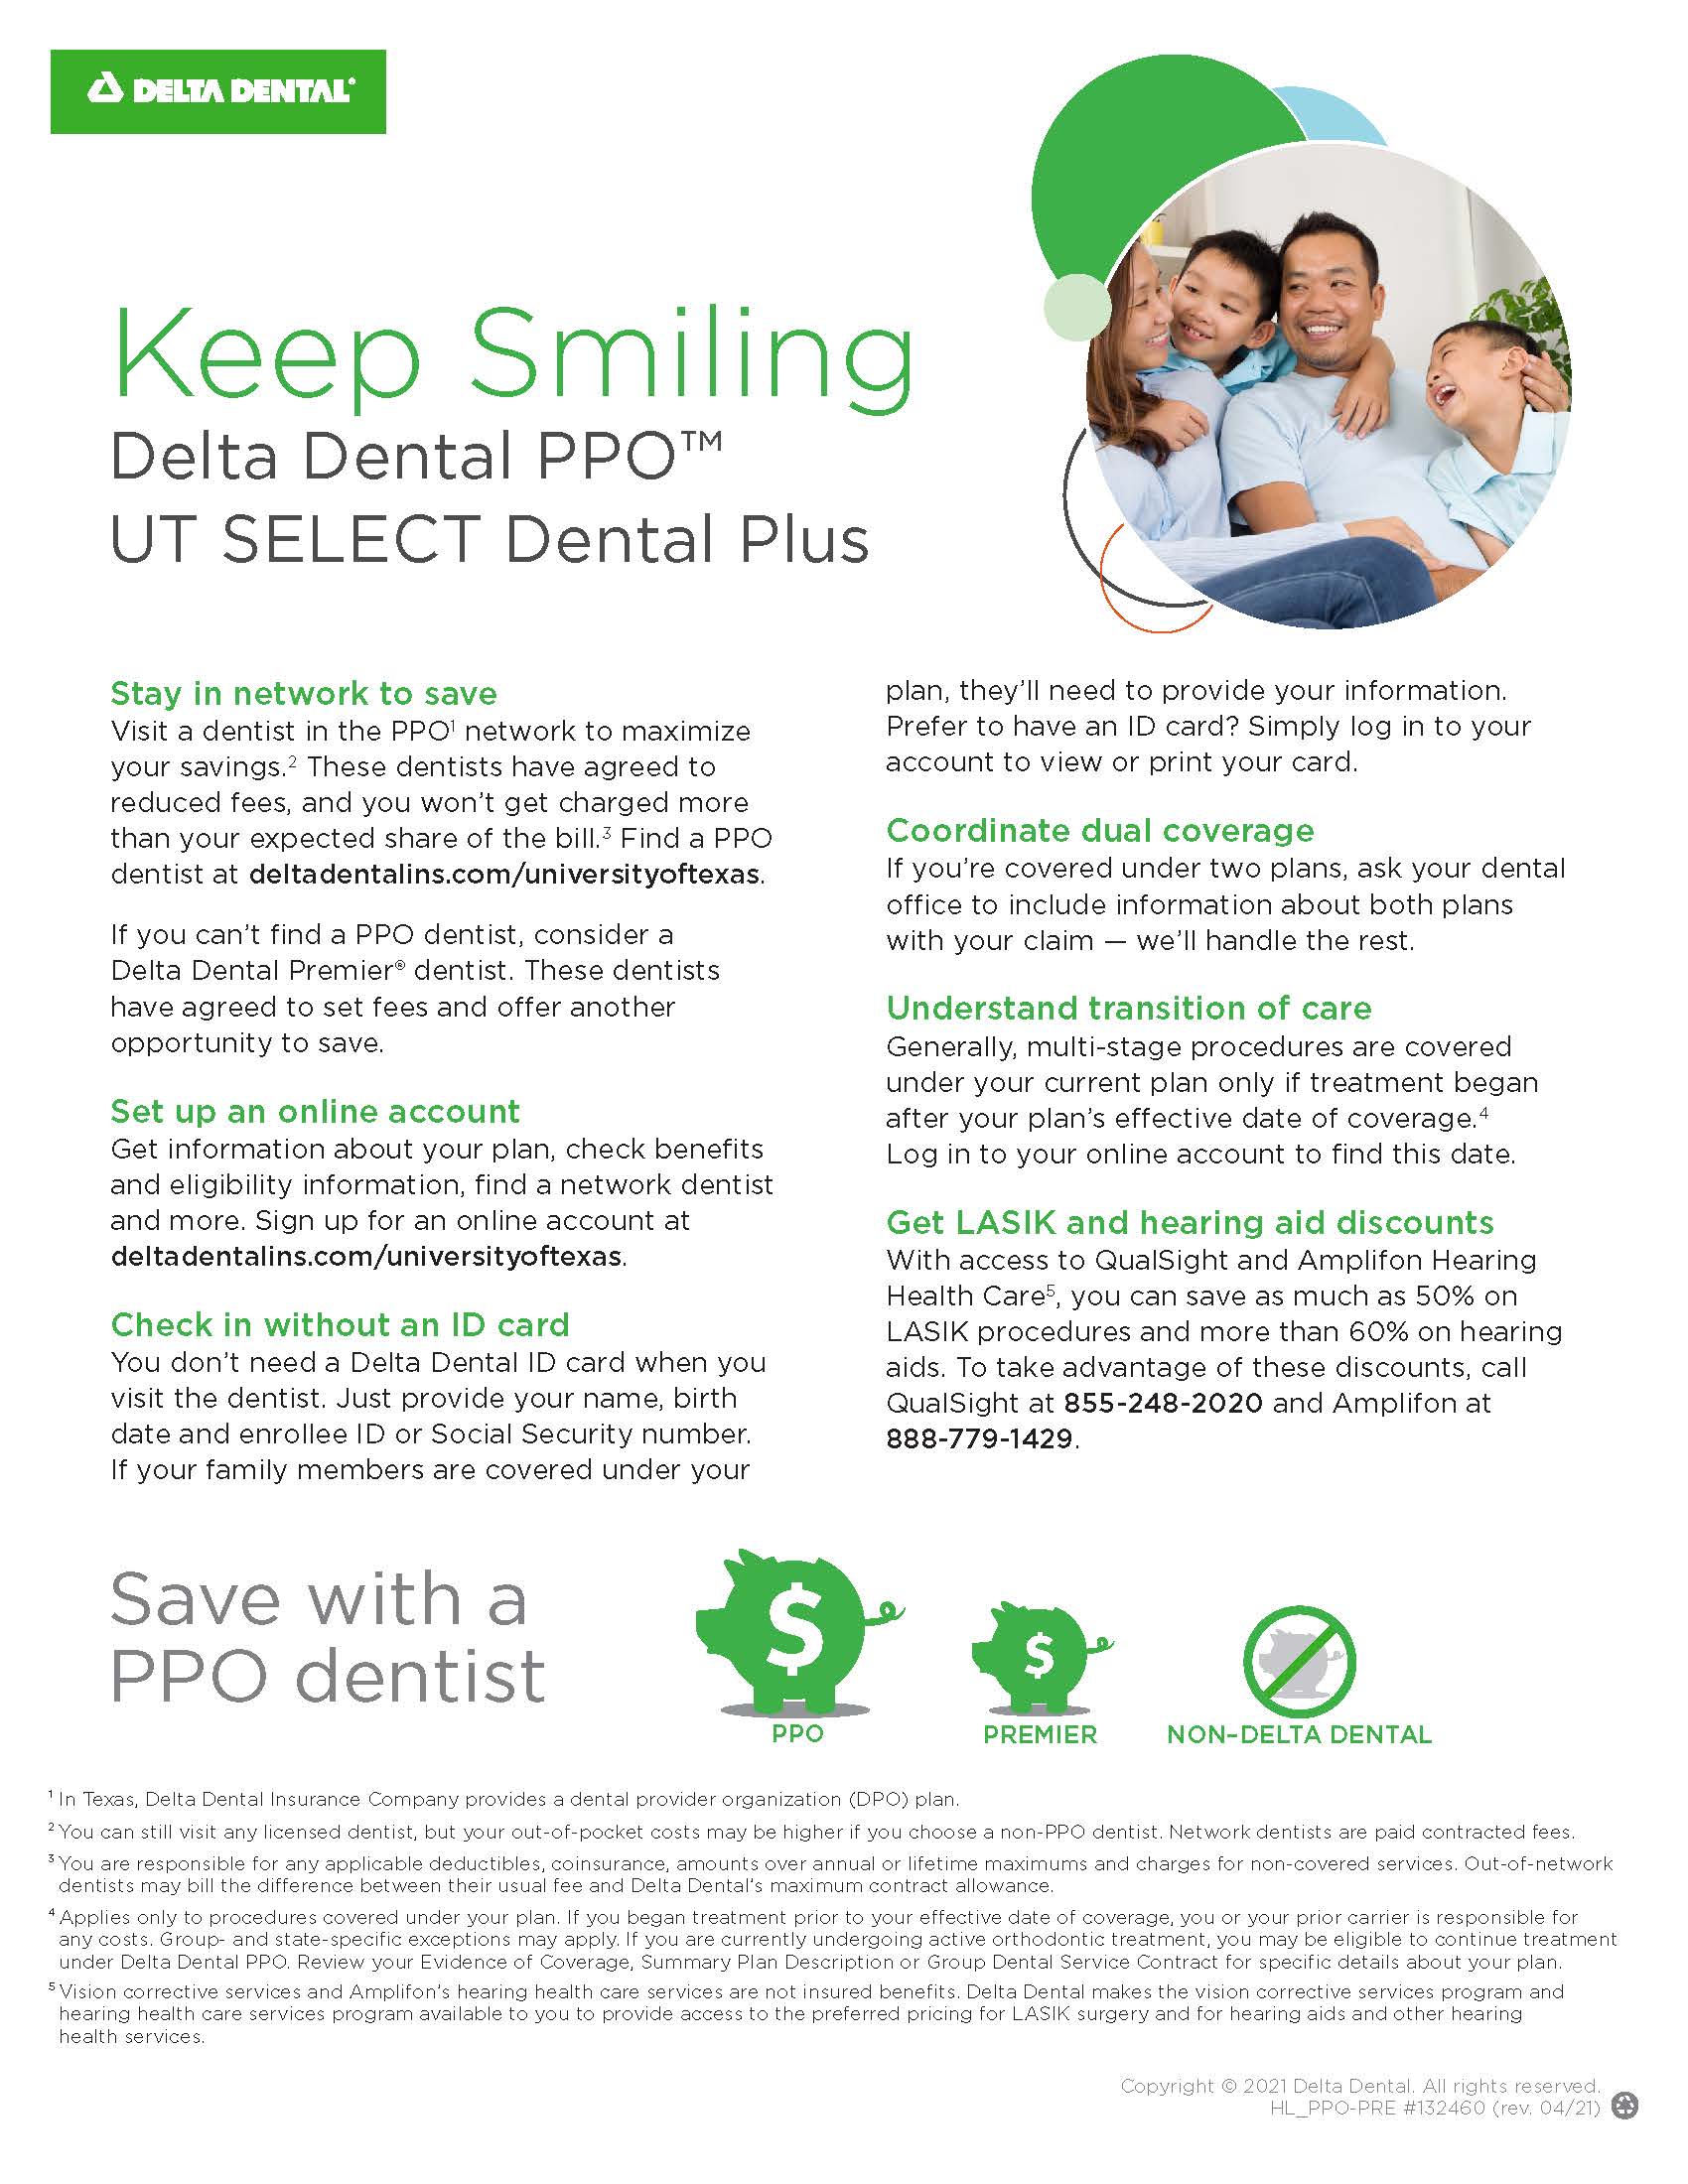 Delta Dental PPO UT SELECT Dental Plus plan